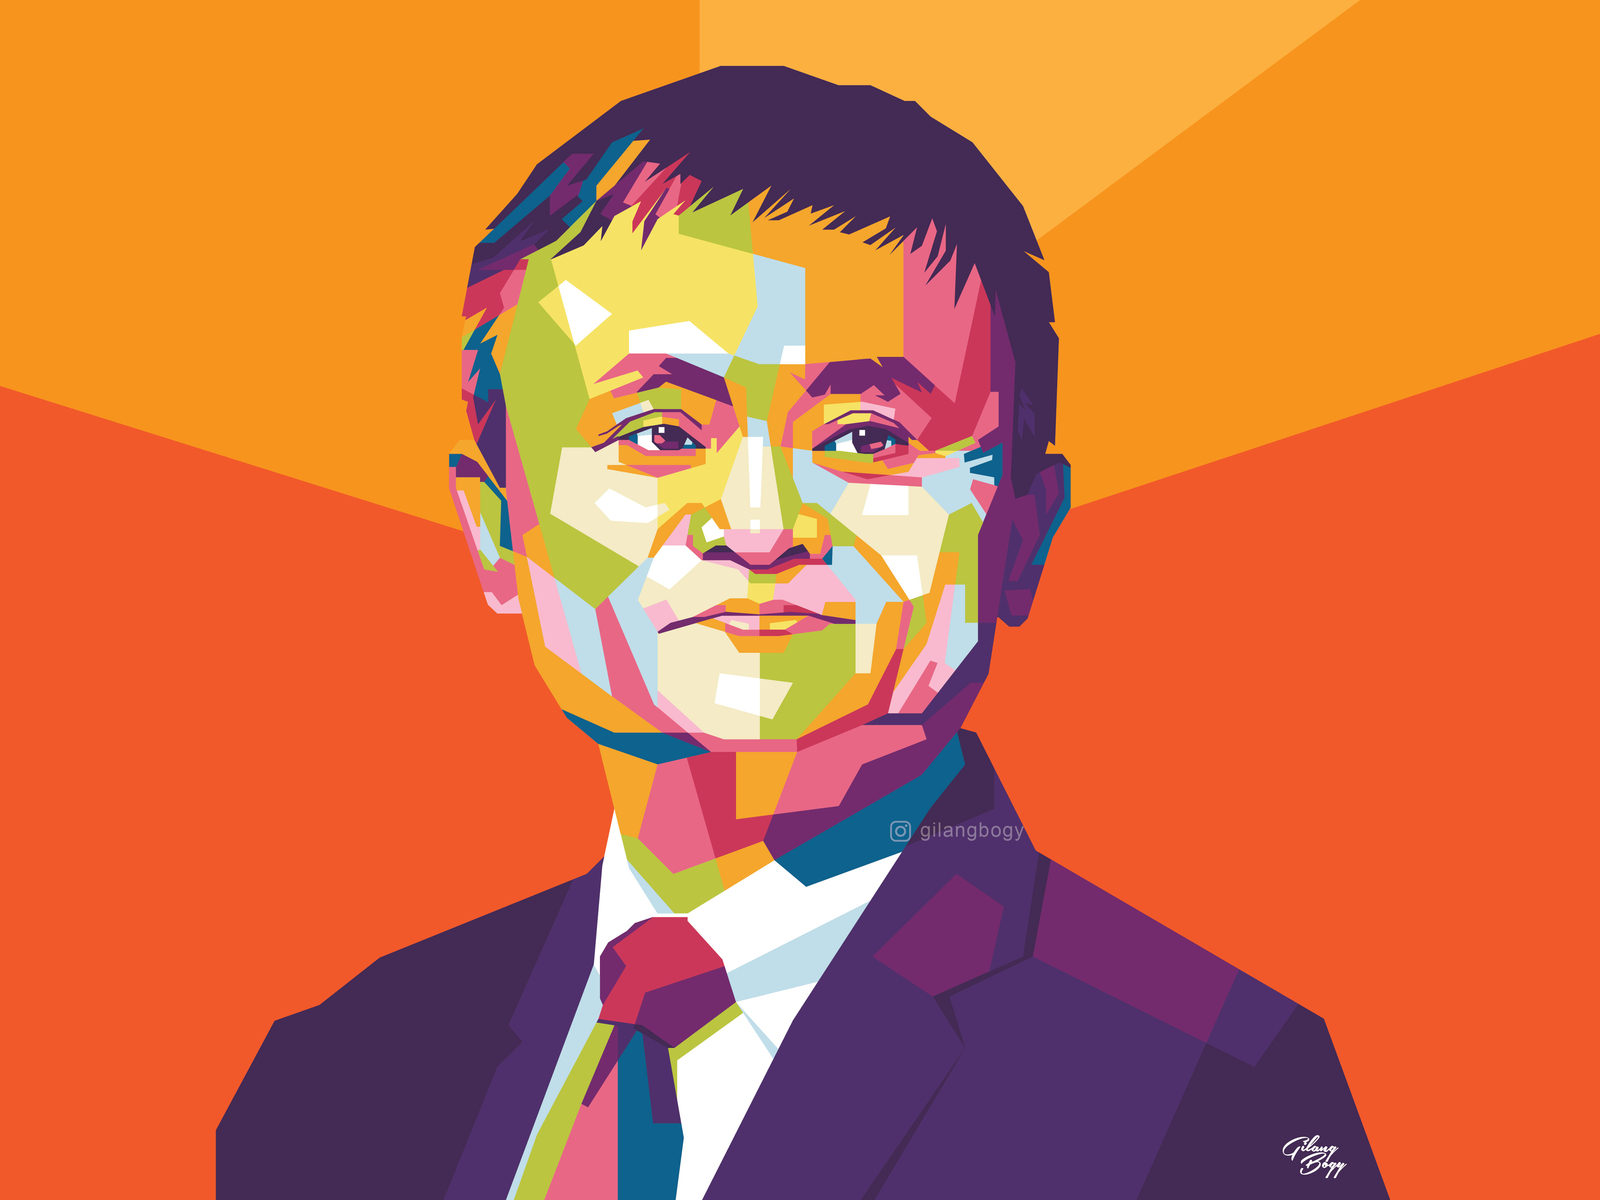 Jack Ma Artwork designed by Gilang Bogy. 